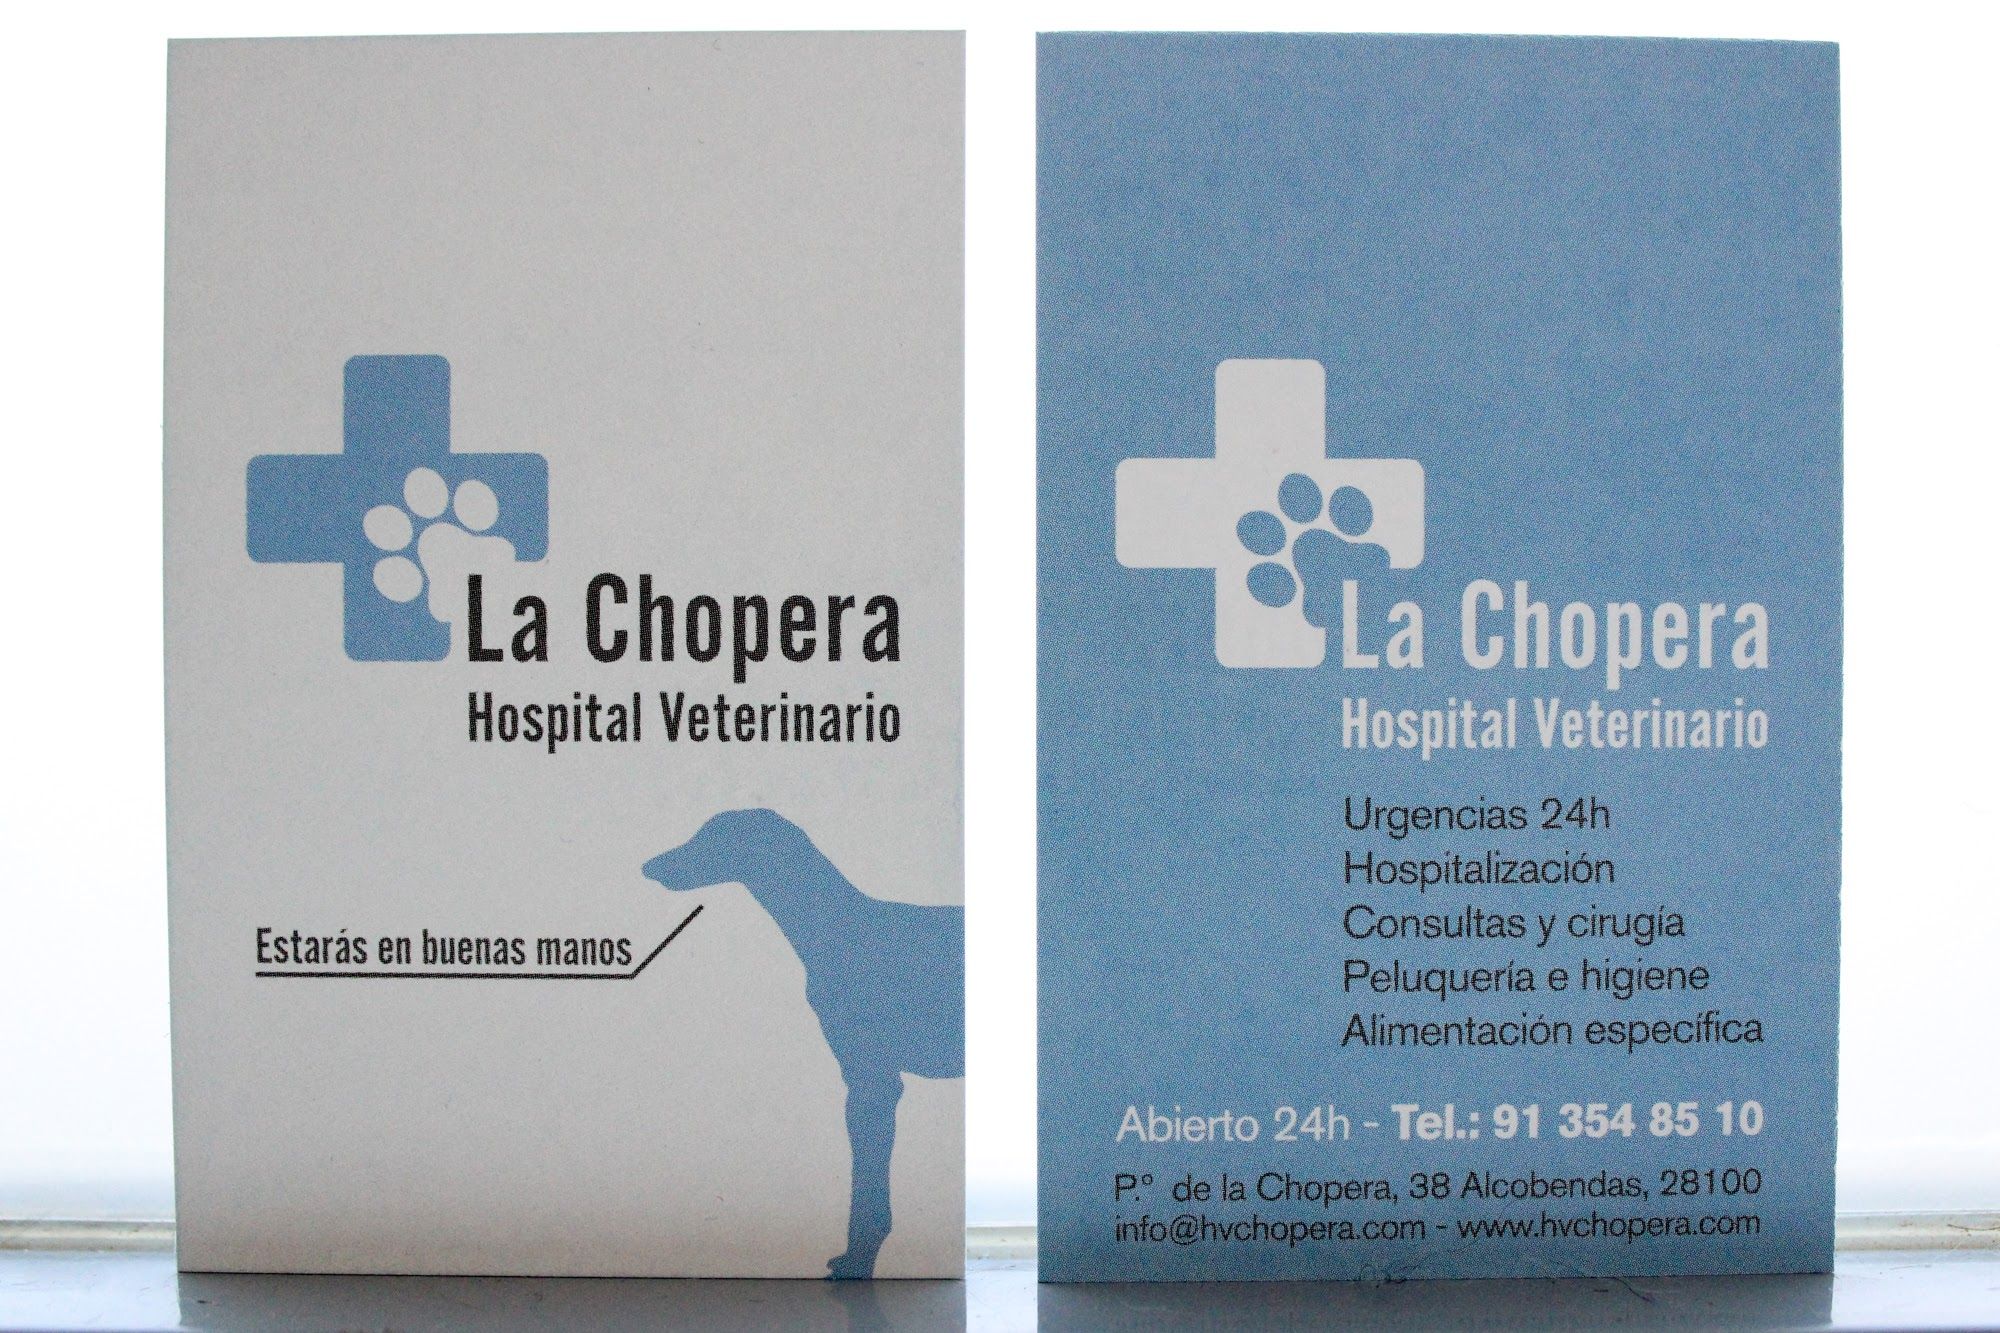 Foto 10 de Veterinarios en Alcobendas | La Chopera Hospital Veterinario